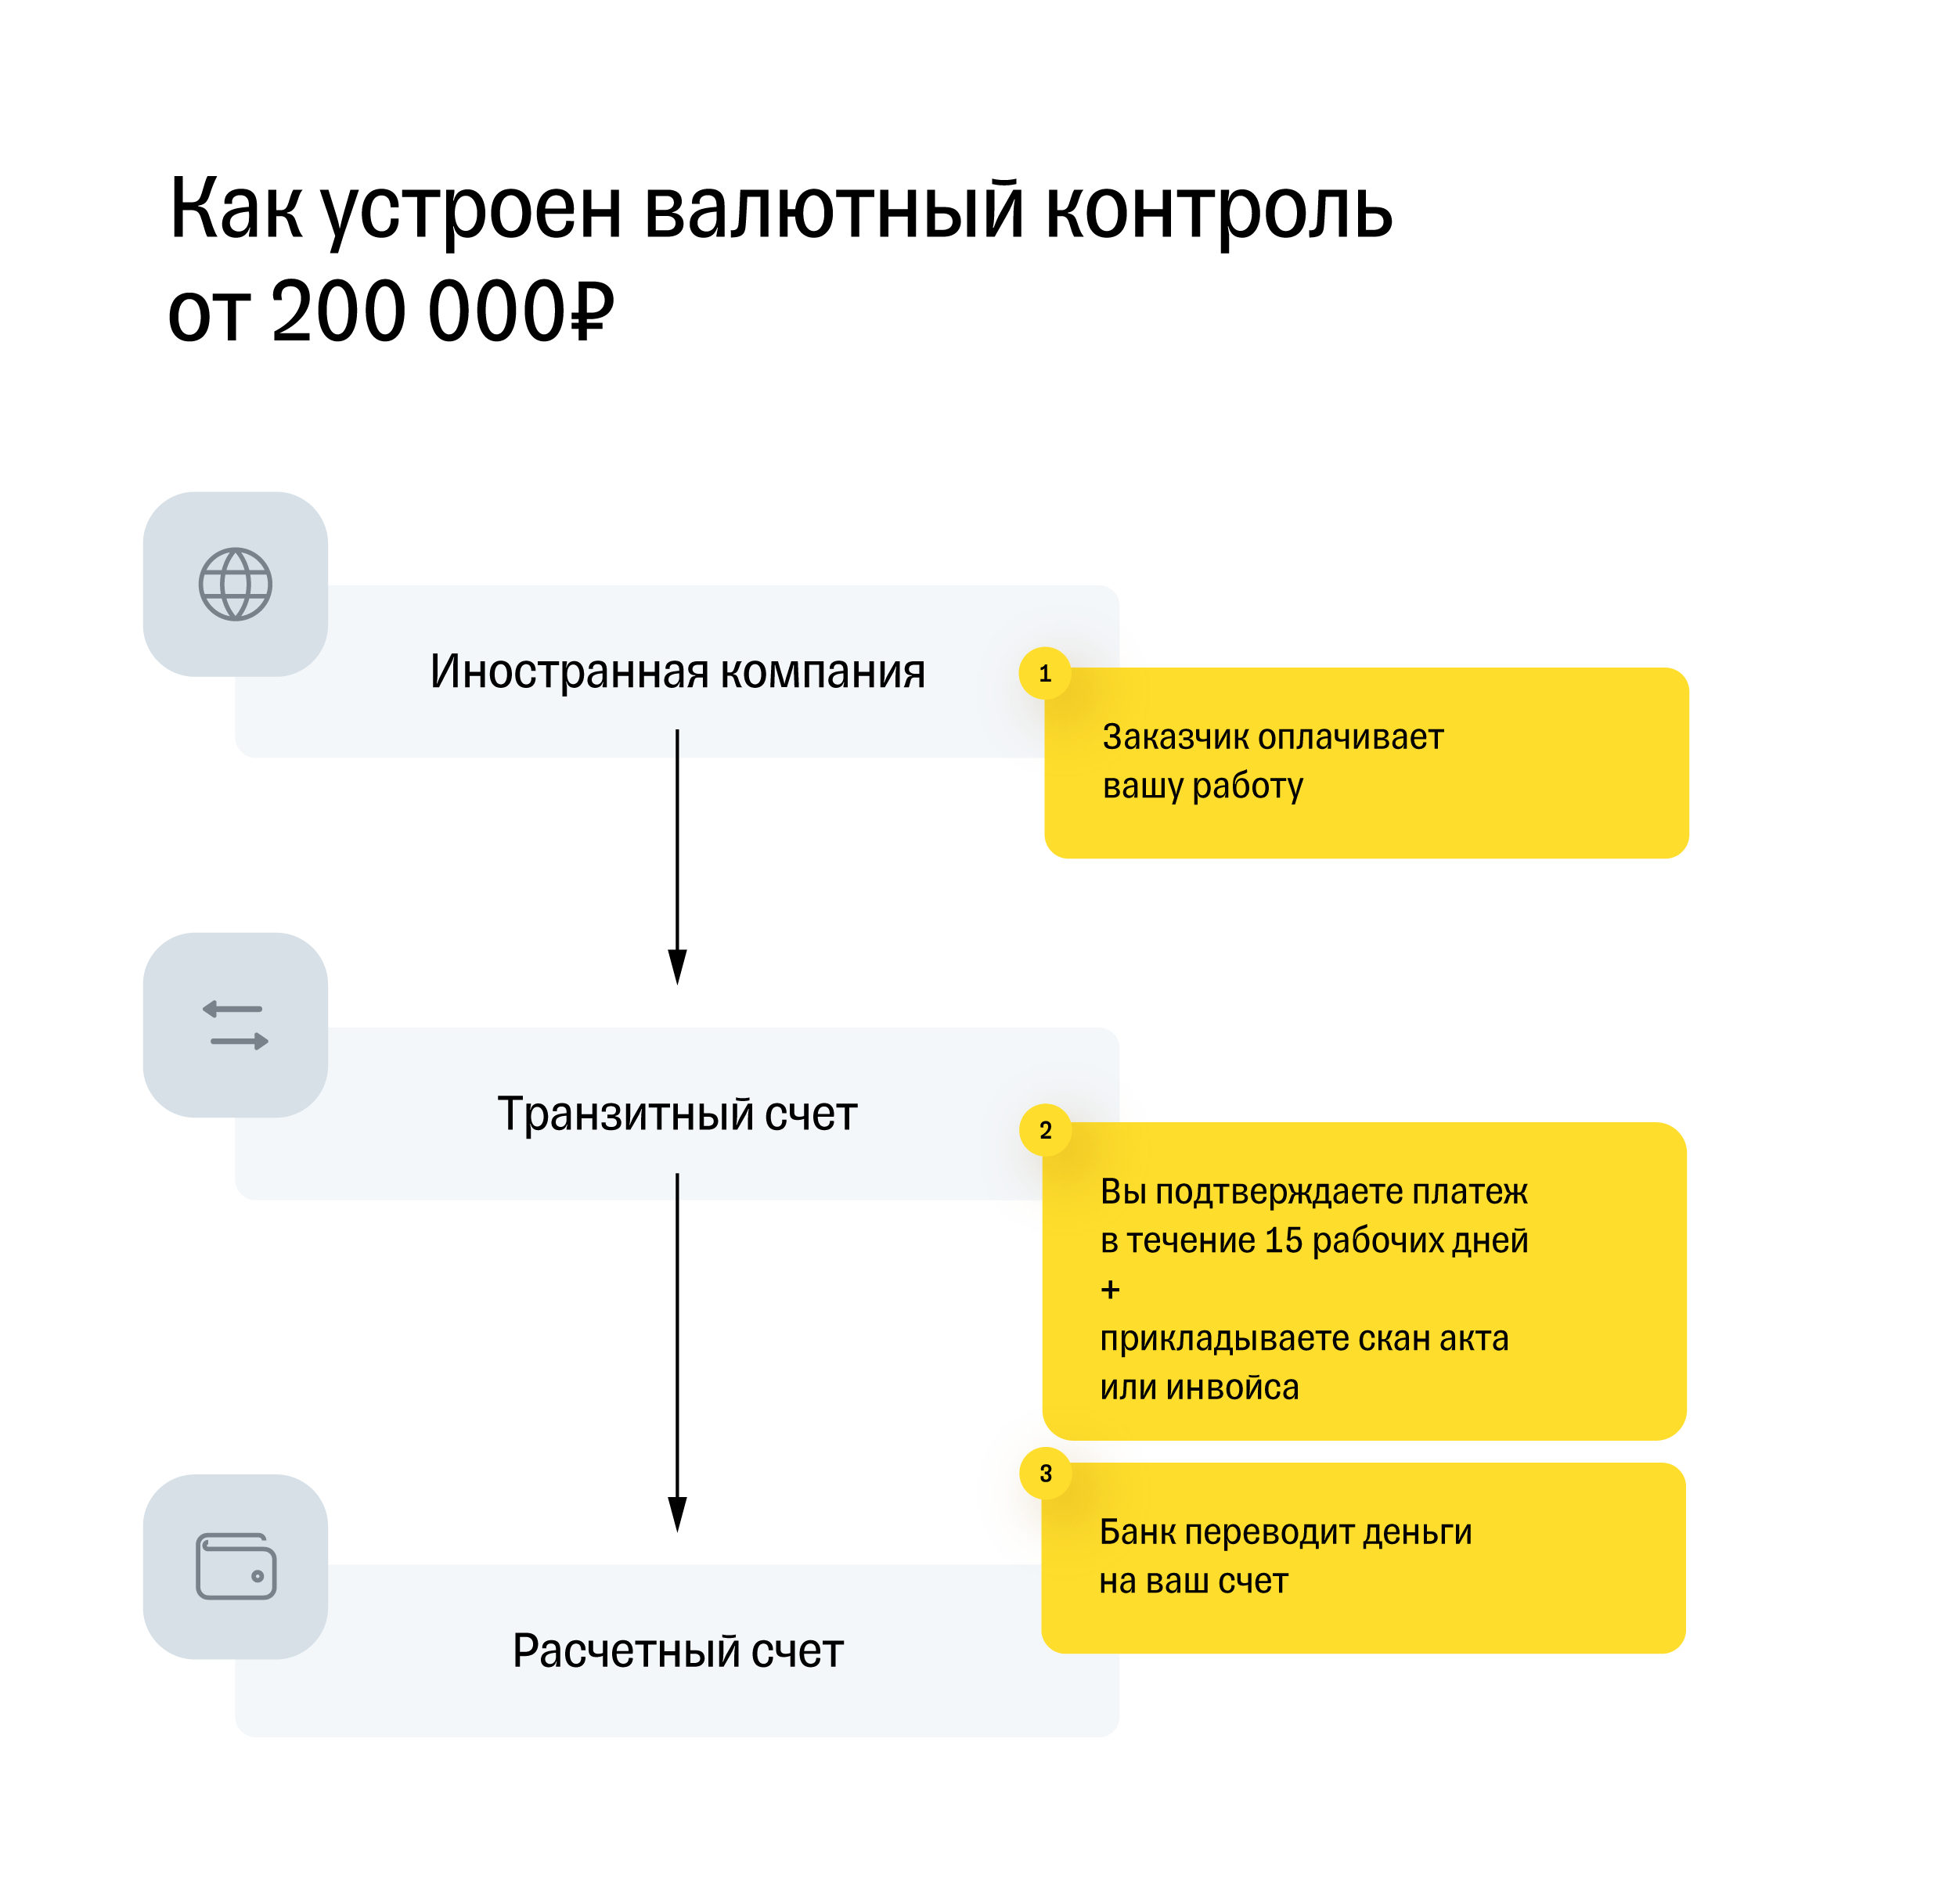 Схема валютного контроля для платежей от 200 000 рублей